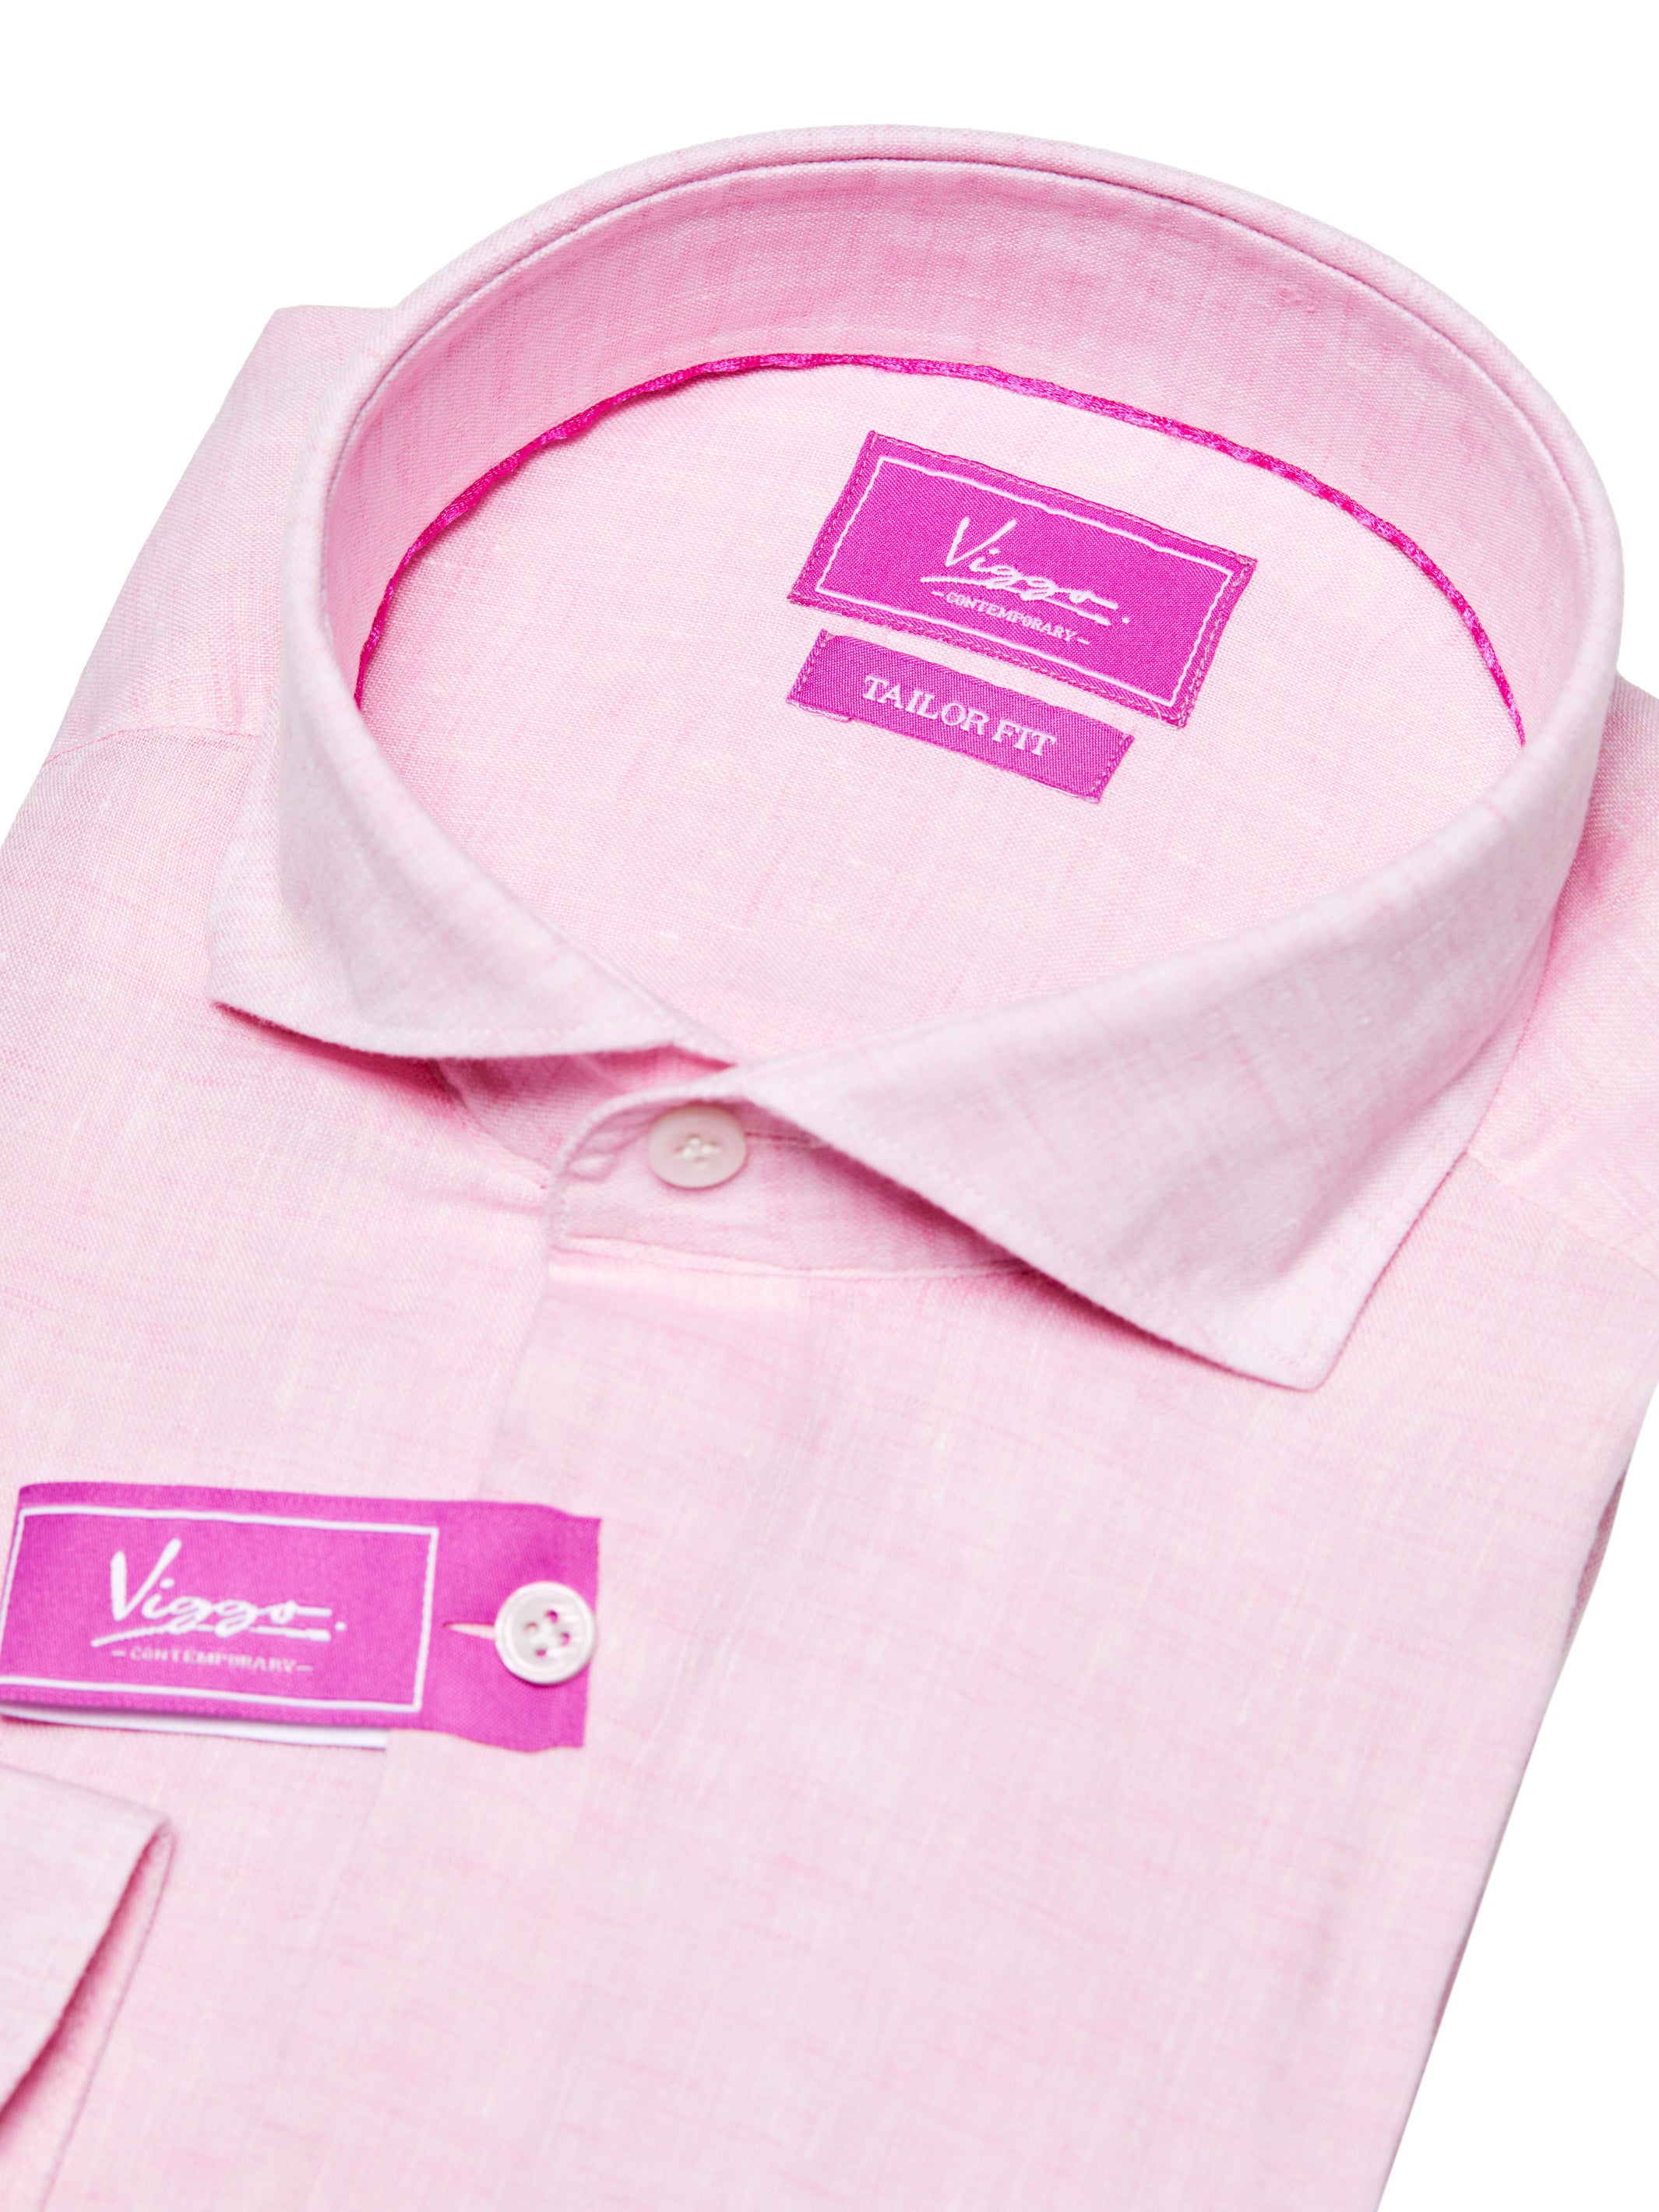 Pink linen shirt